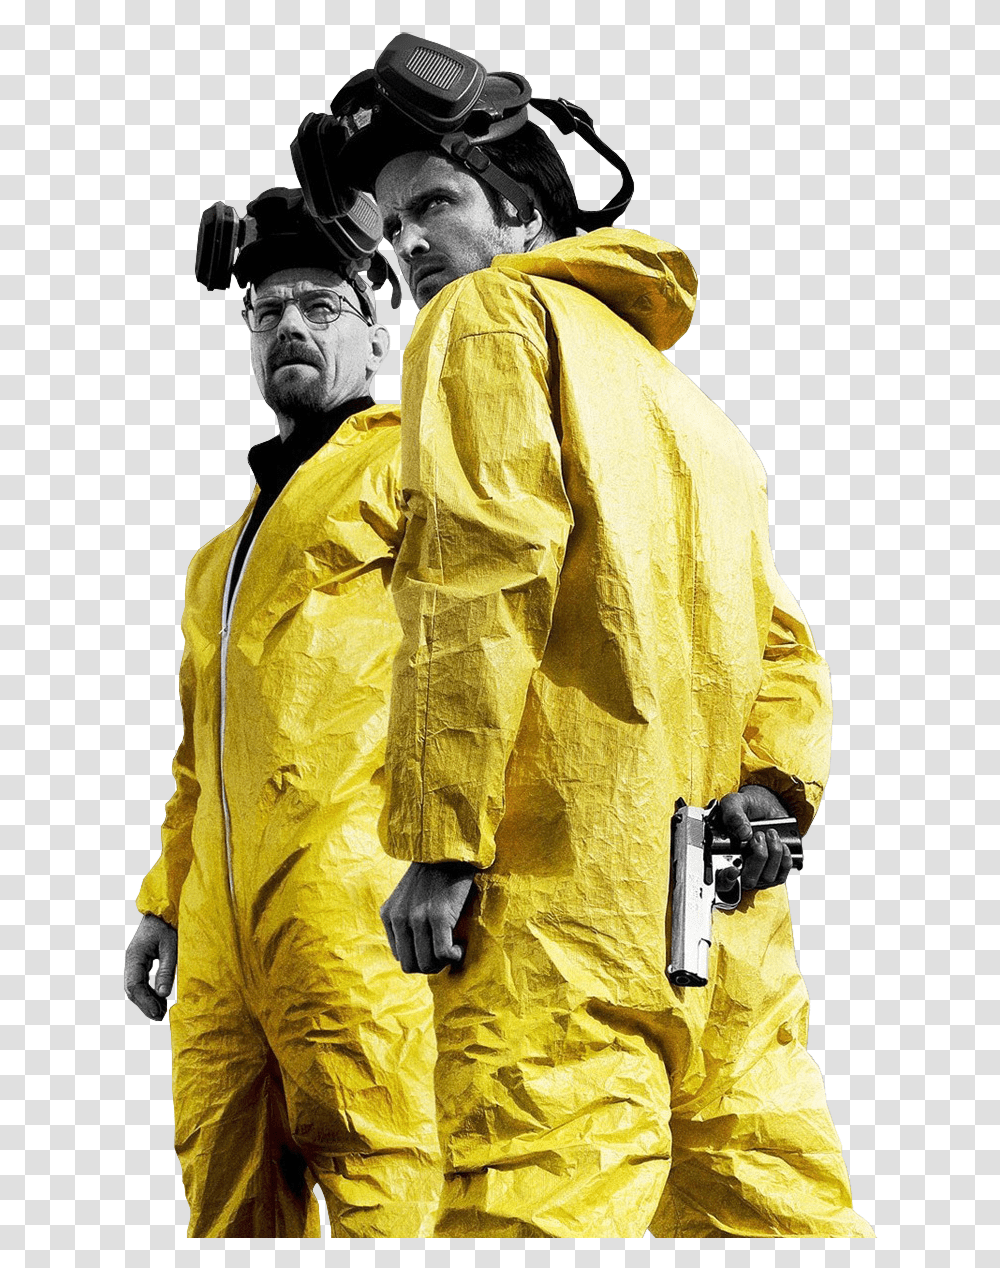 Breaking Bad Season 3 Download Breaking Bad Iphone X, Apparel, Coat, Raincoat Transparent Png